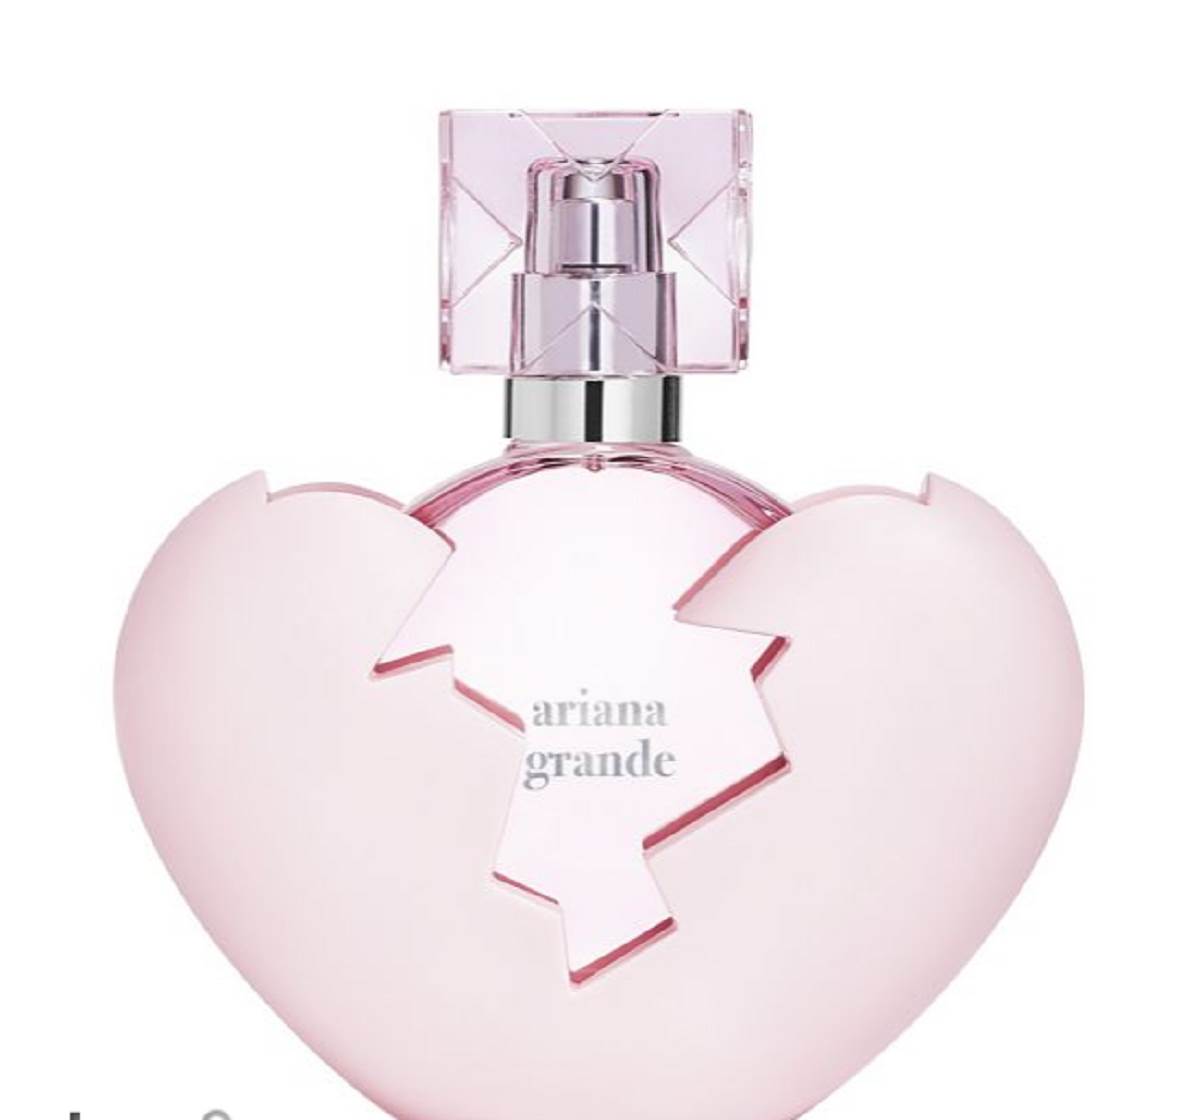  Ariana Grande parfem. 